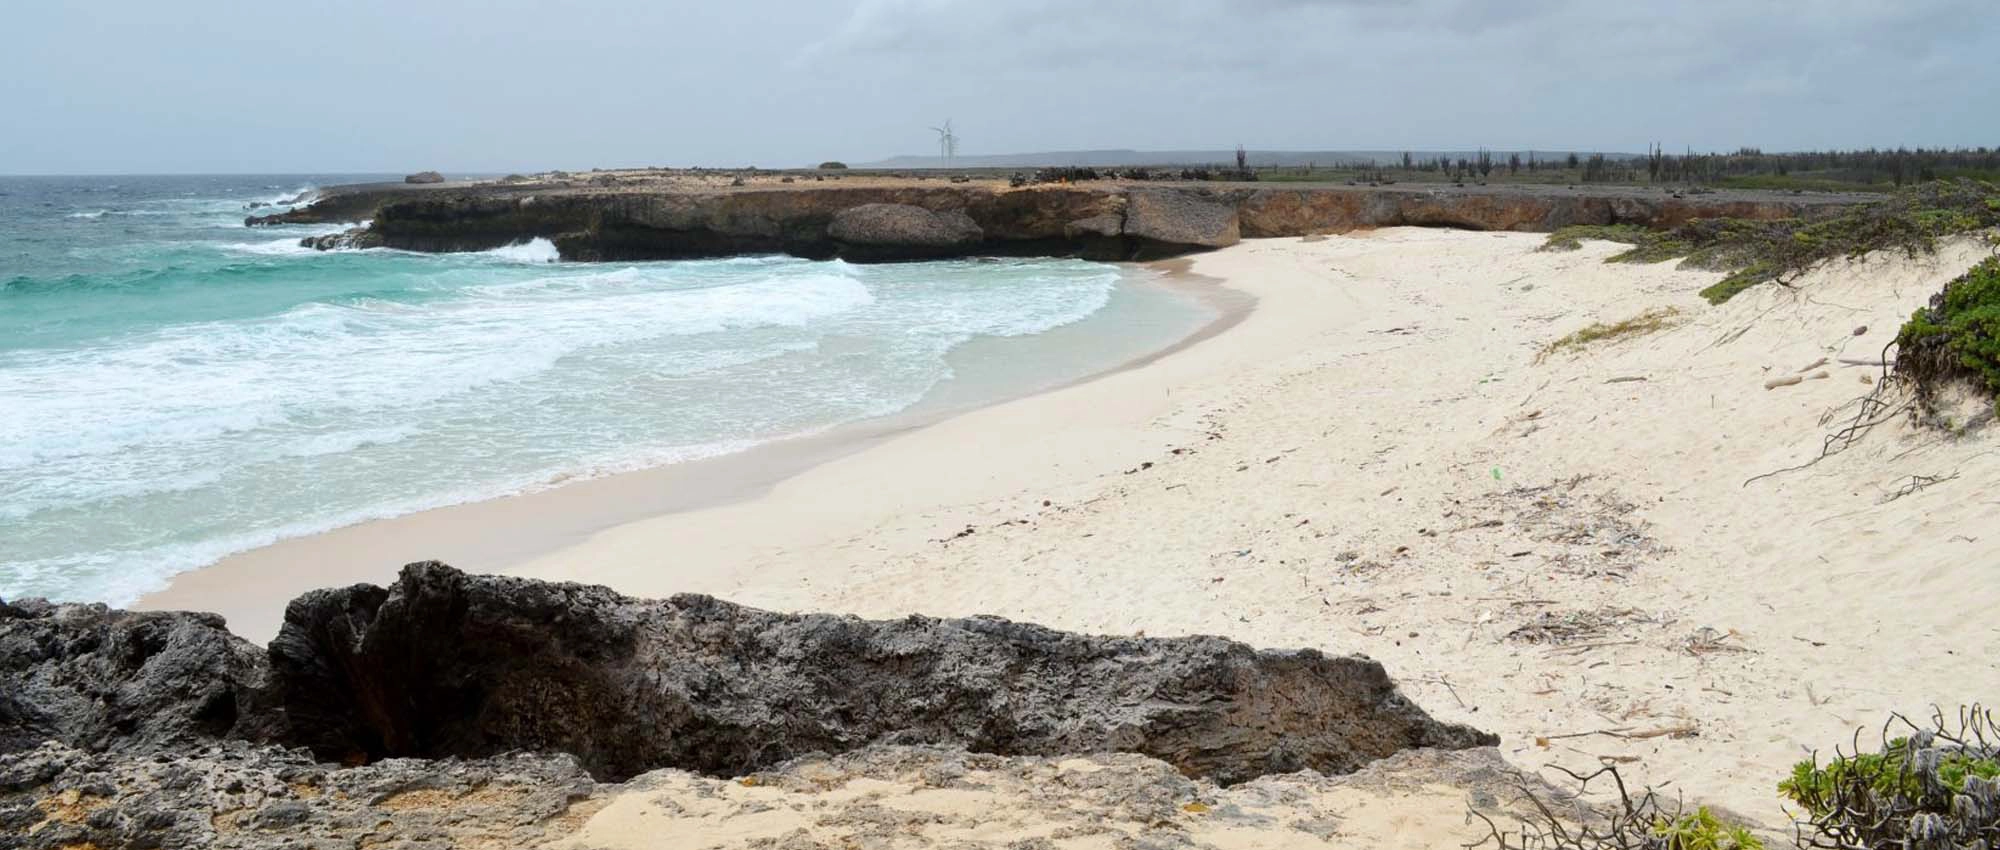  Playa Chikitu  strand - Bonaire